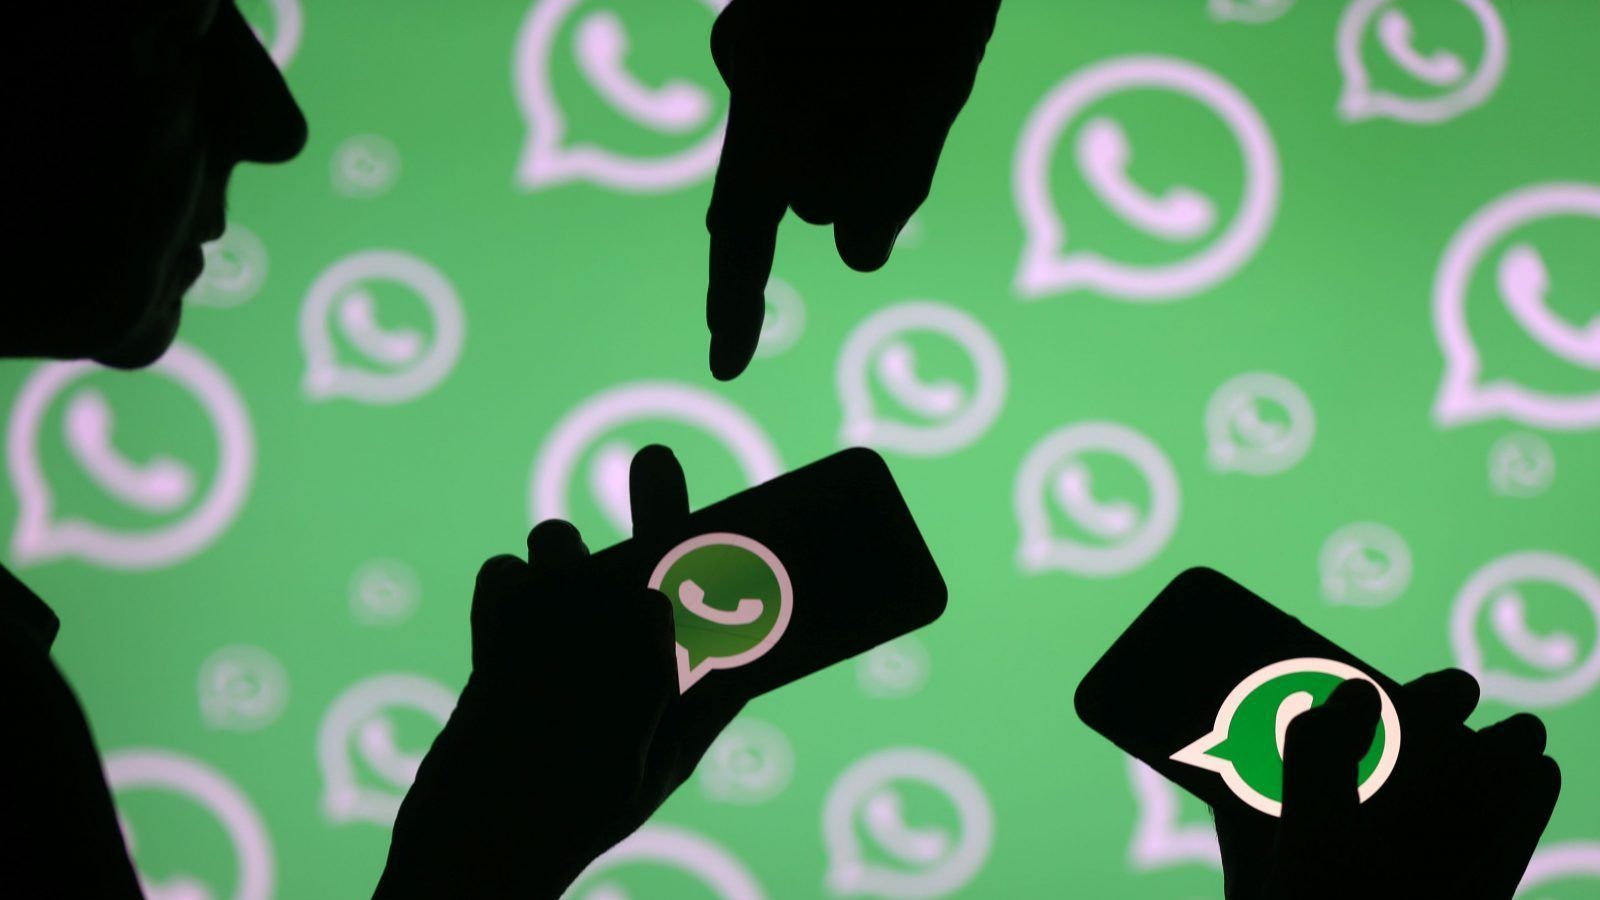 WhatsApp võib saada reklaame, kuna Facebook otsib rakenduse monetiseerimiseks rohkem võimalusi